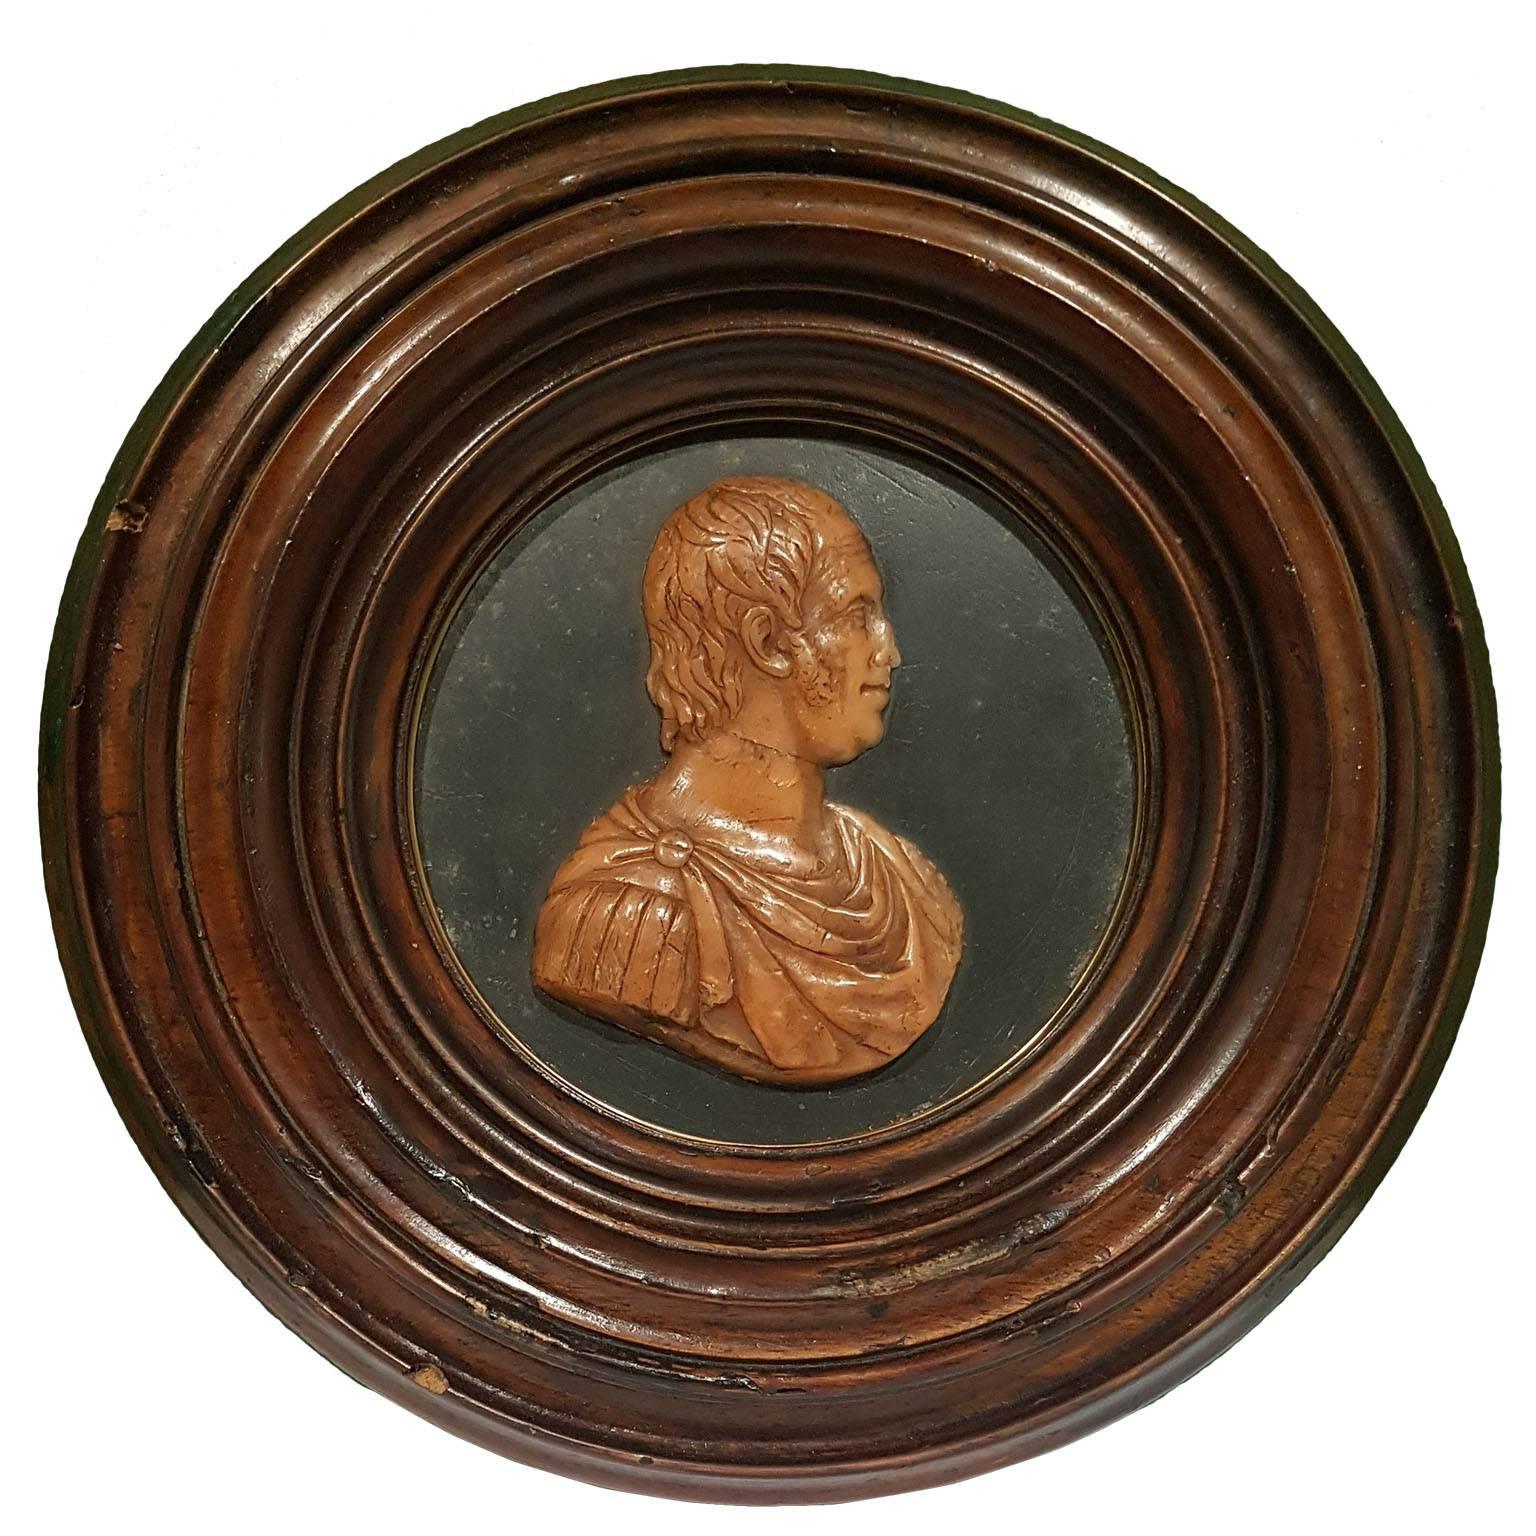 Flachrelief mit dem Profil von Ferdinand IV. Borbone als römischer Kaiser, hergestellt mit gemustertem Wachs und überzogen mit einem runden Nussbaumholzrahmen.

Dieses Produkt stammt aus Italien und wird von dort aus versandt.